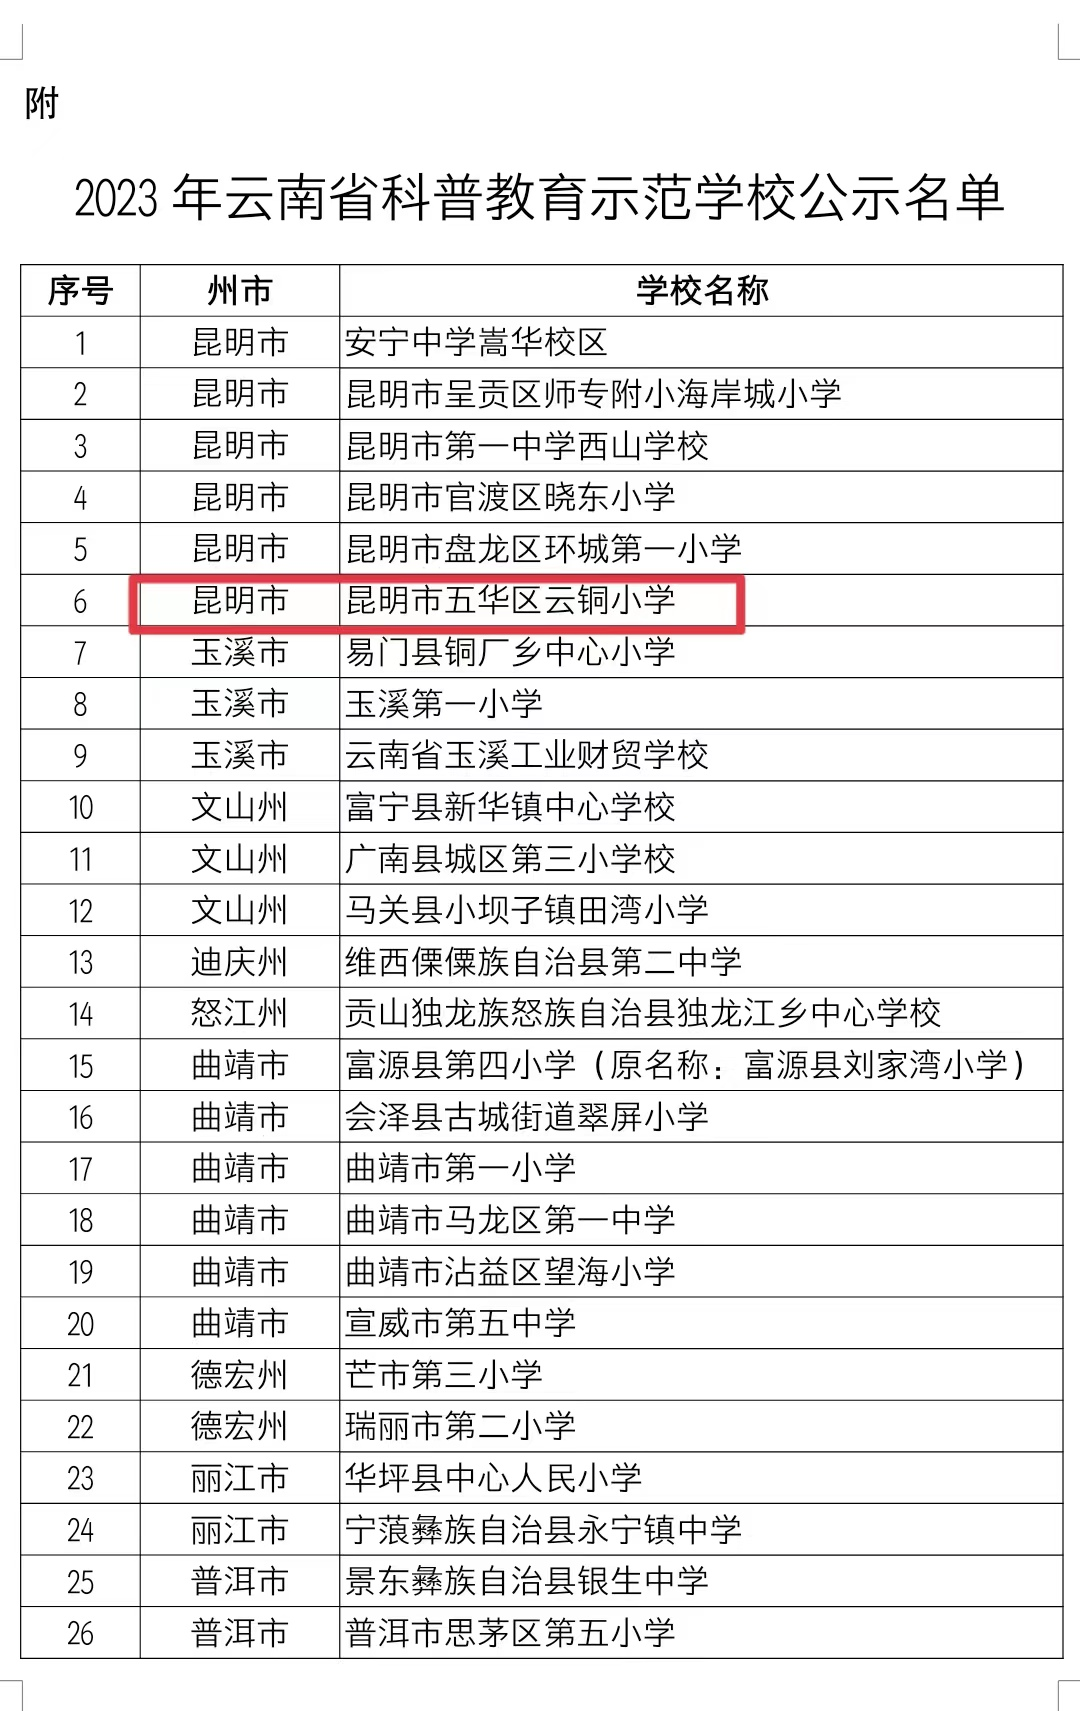 【喜报】五华区云铜小学被命名为“2023年云南省科普教育示范学校”